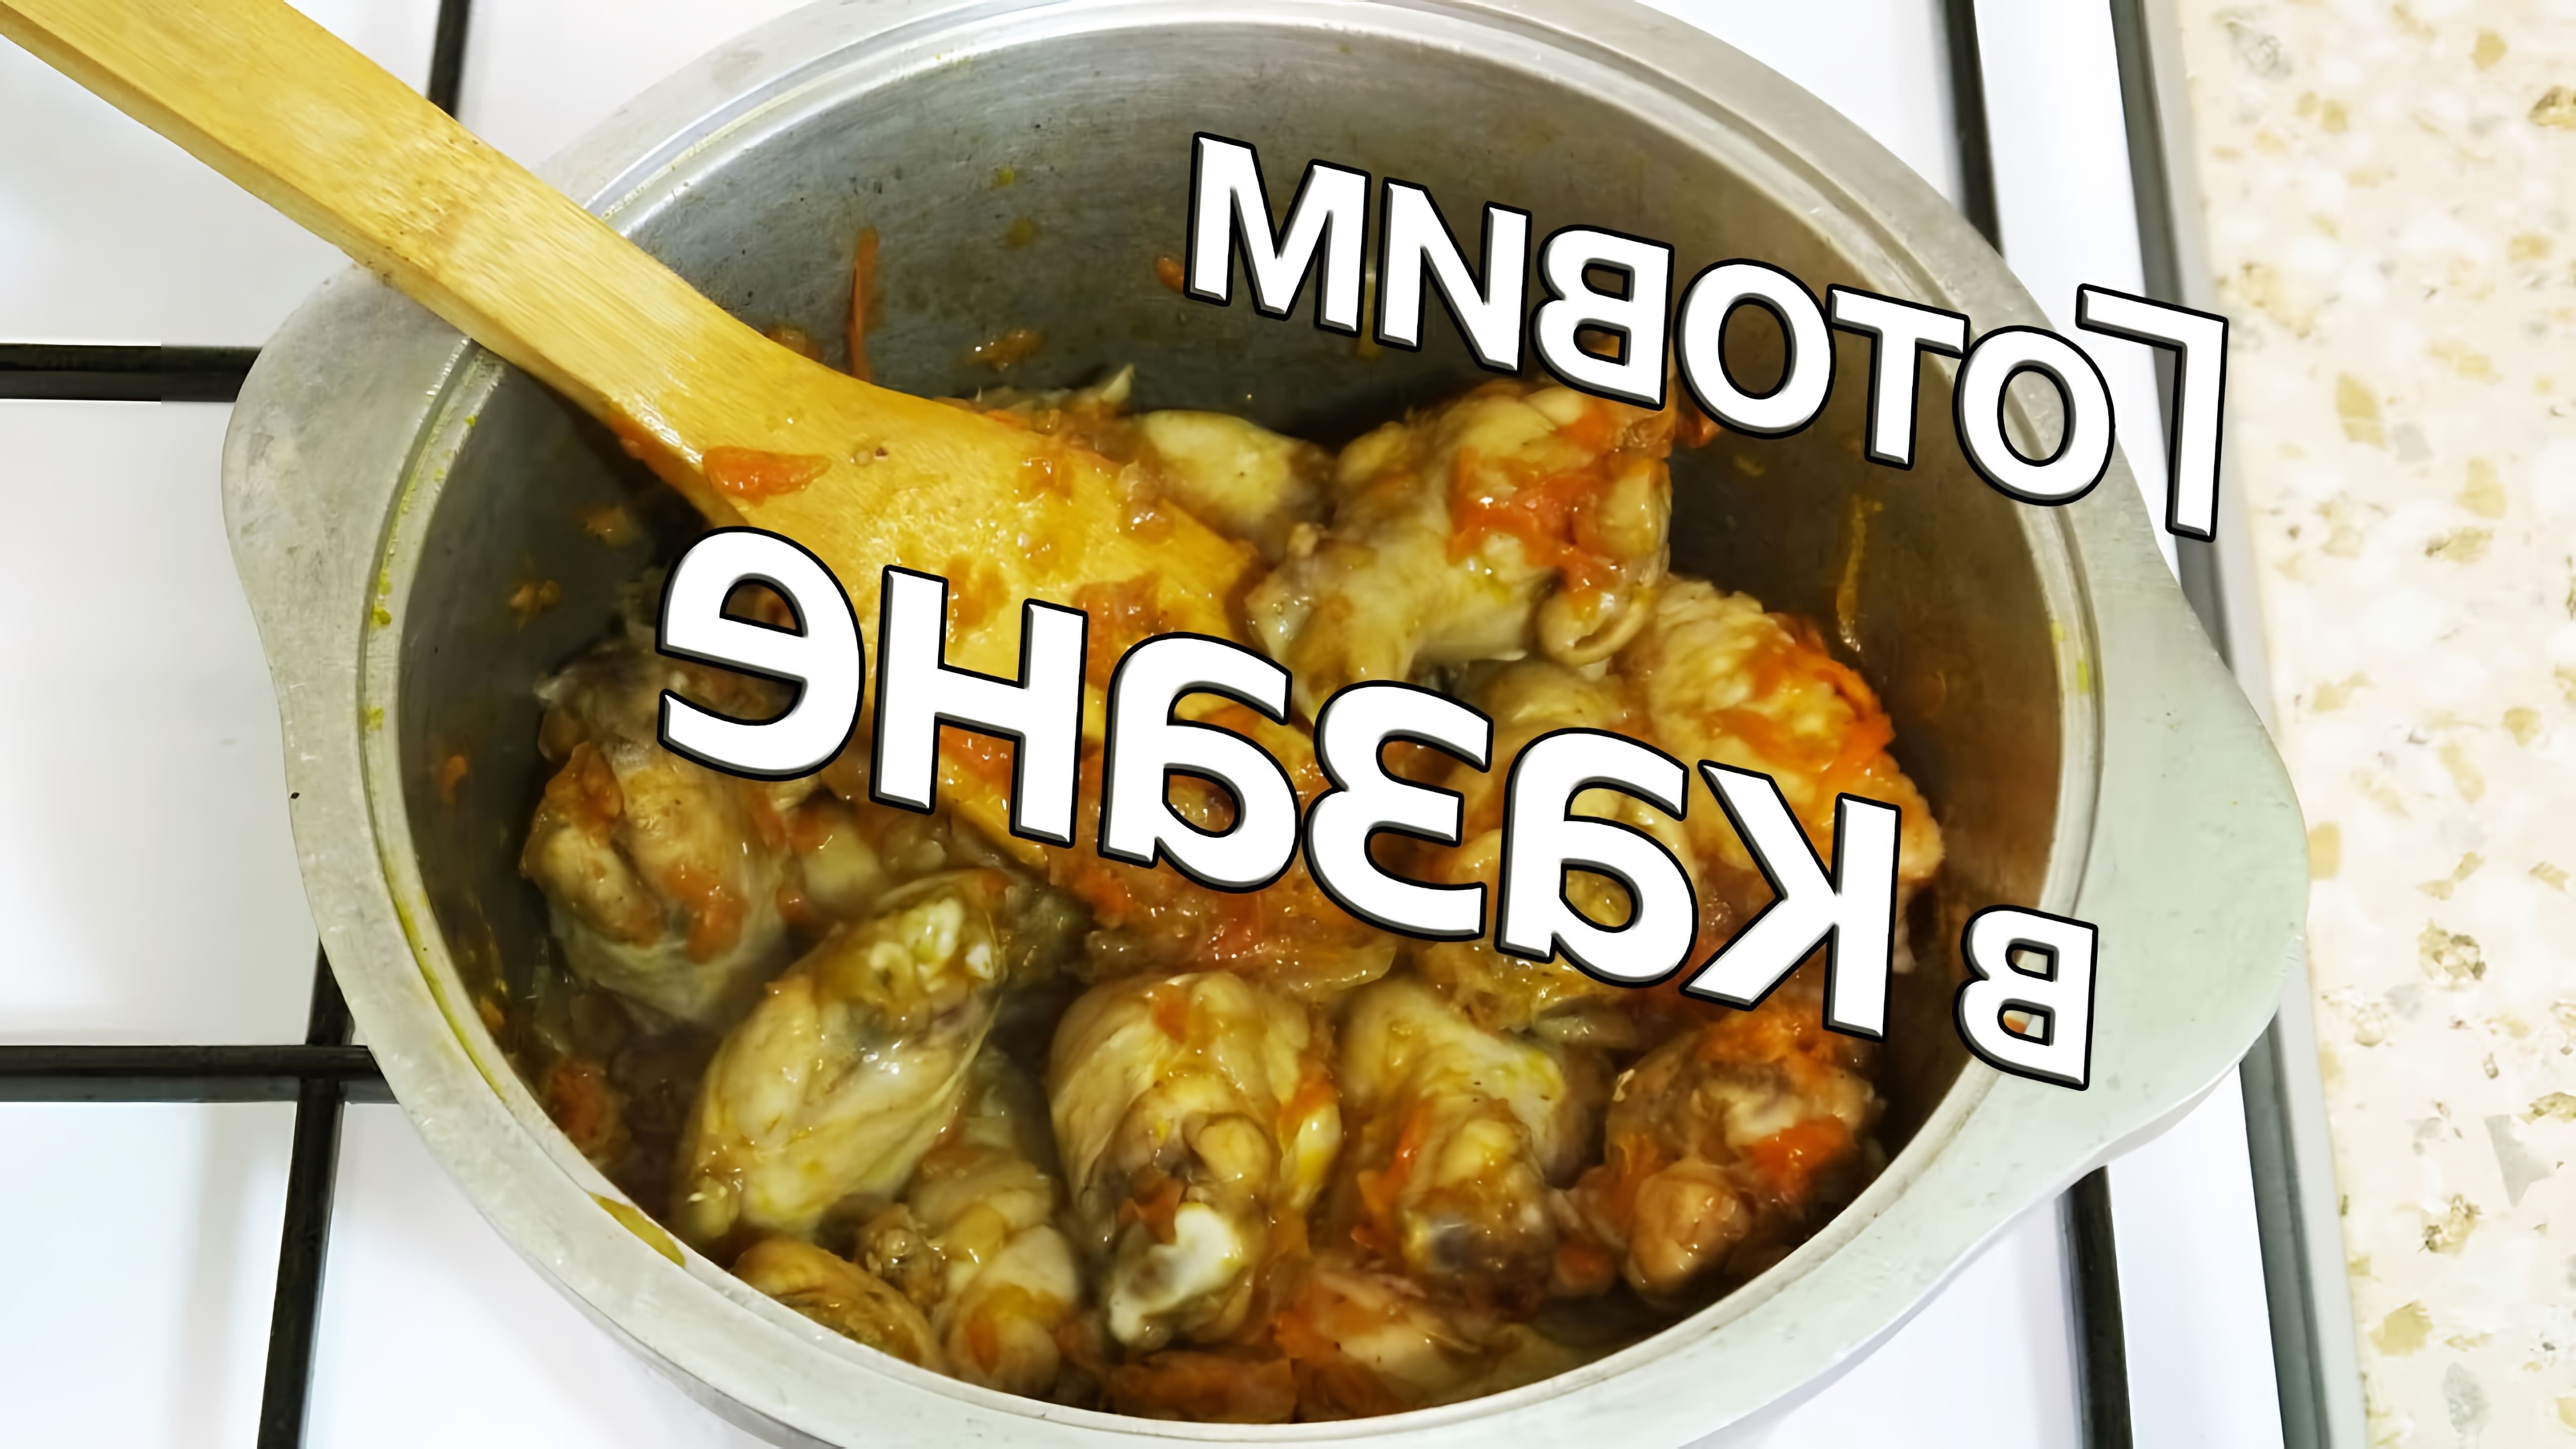 В этом видео демонстрируется рецепт приготовления вкусного блюда из курицы и картофеля в казане на плите